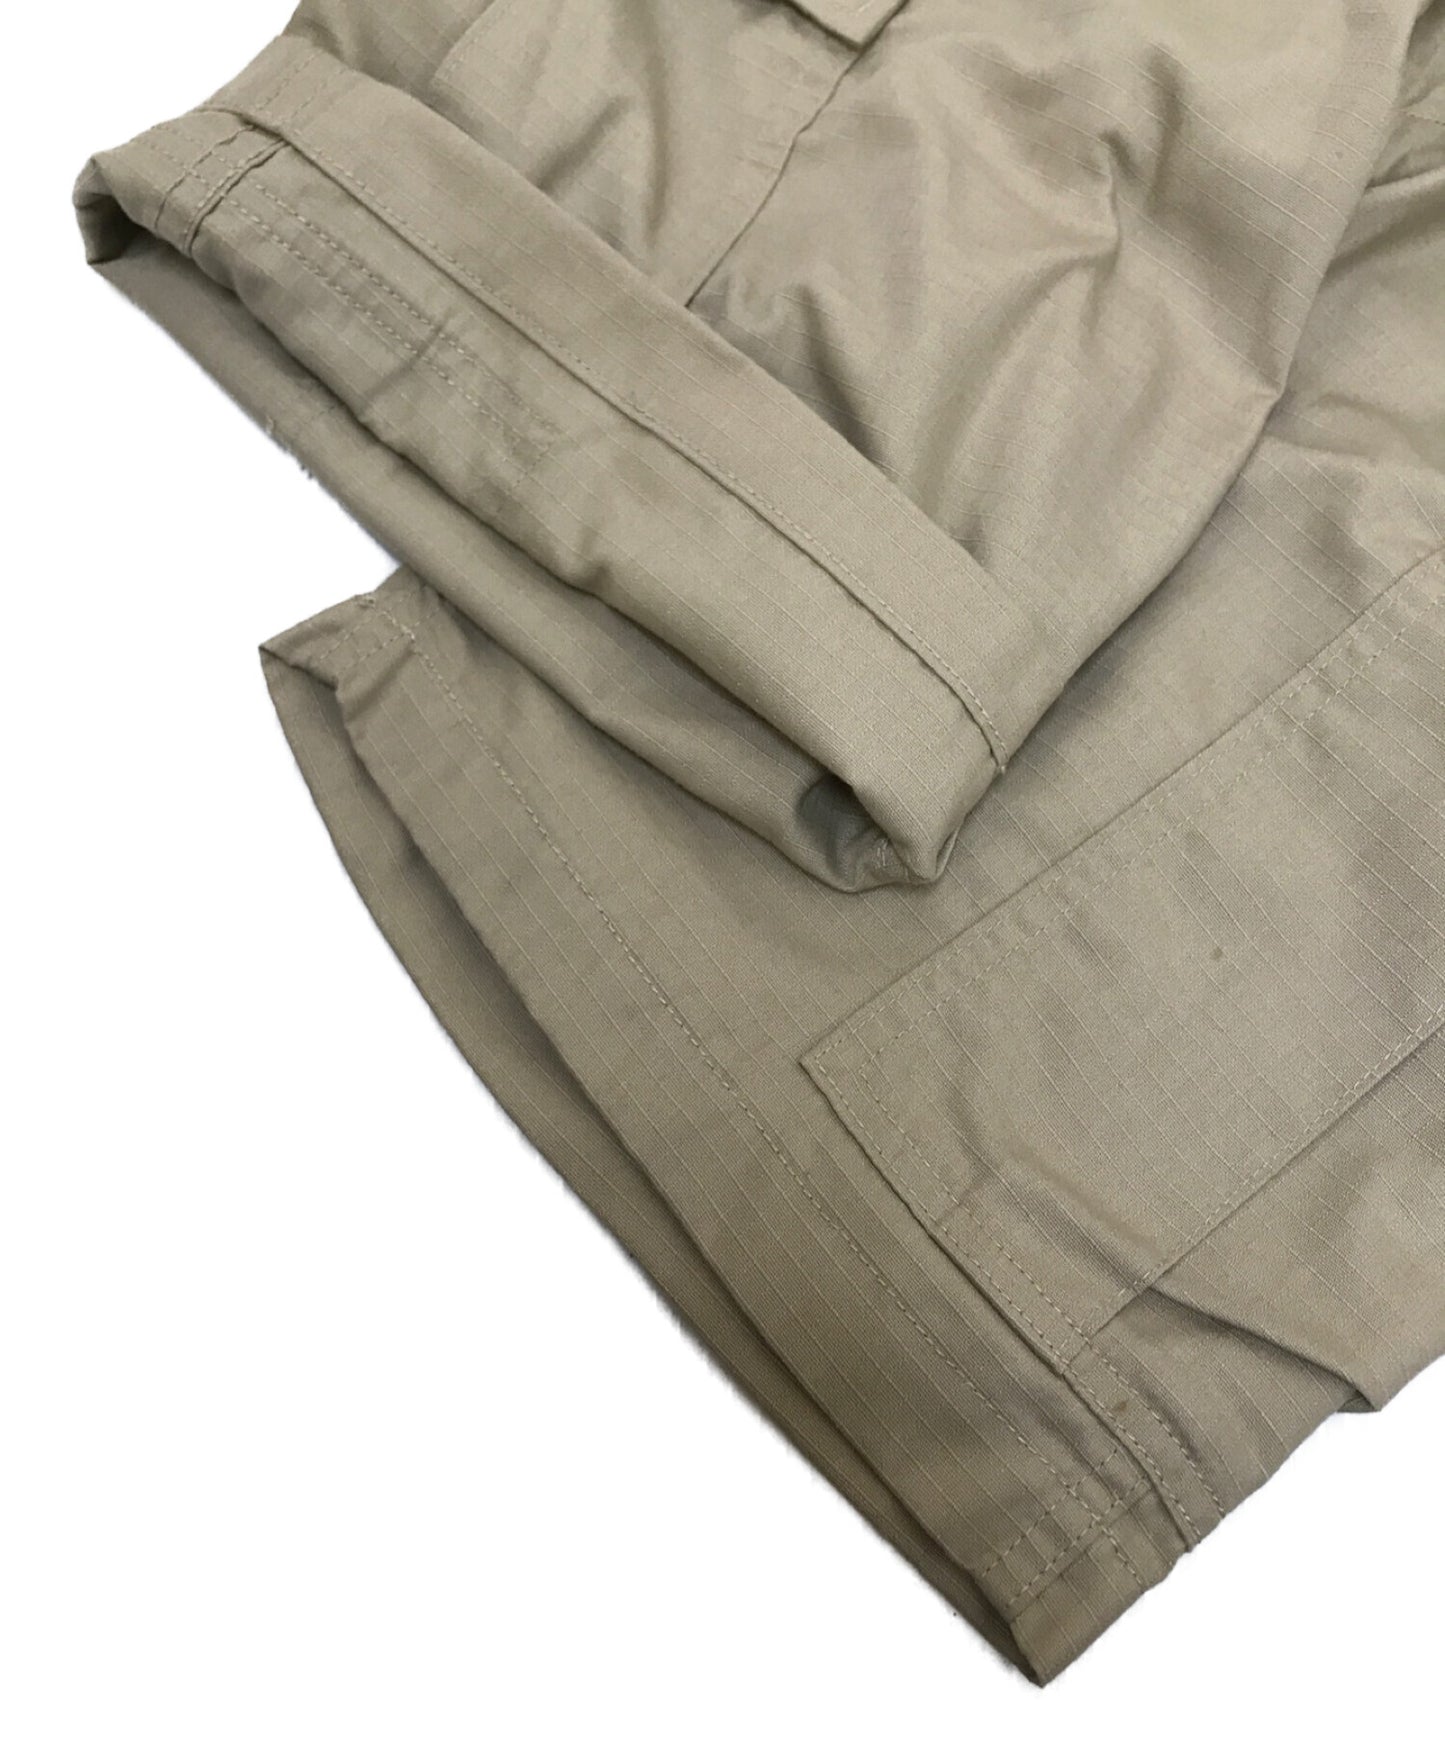 WTAPS货物短裤01半裤RIPSTOP徽标171LTDT-PTM04